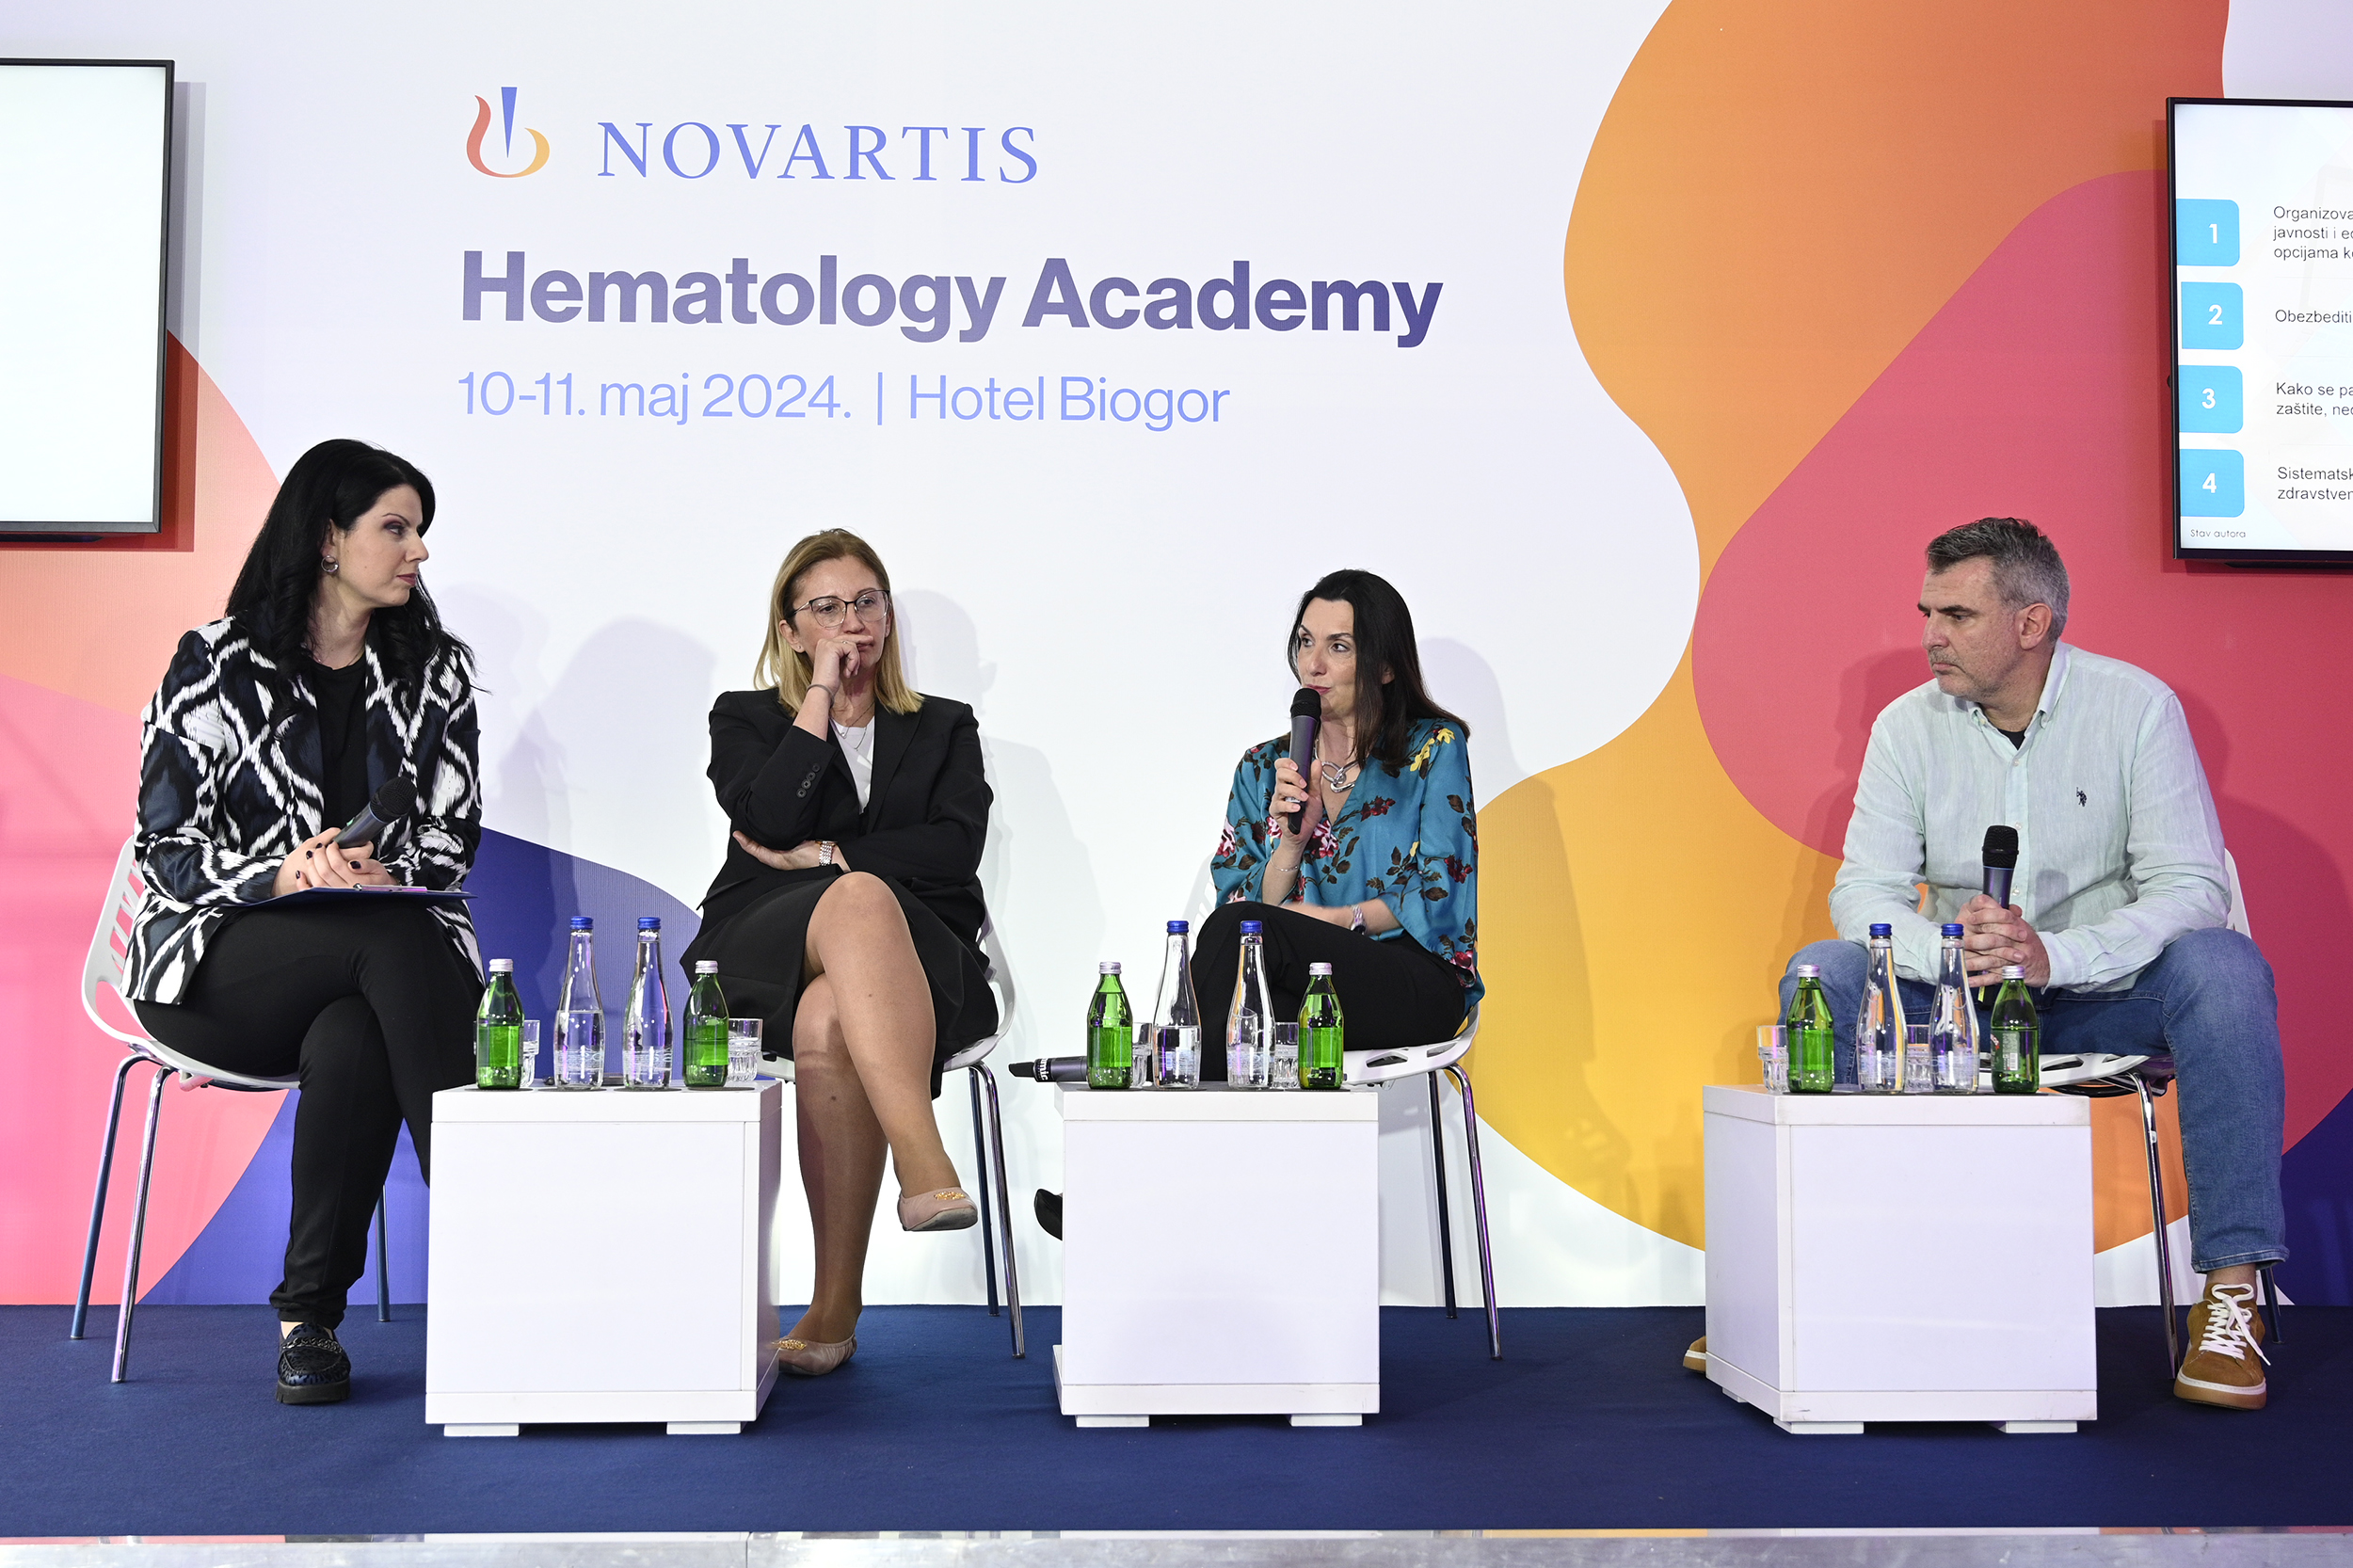 Održan panel Hematološke akademije: „Postoji potreba da hematološki maligniteti budu prepoznati kao stanja i bolesti koja mogu da utiču na kvalitet života“